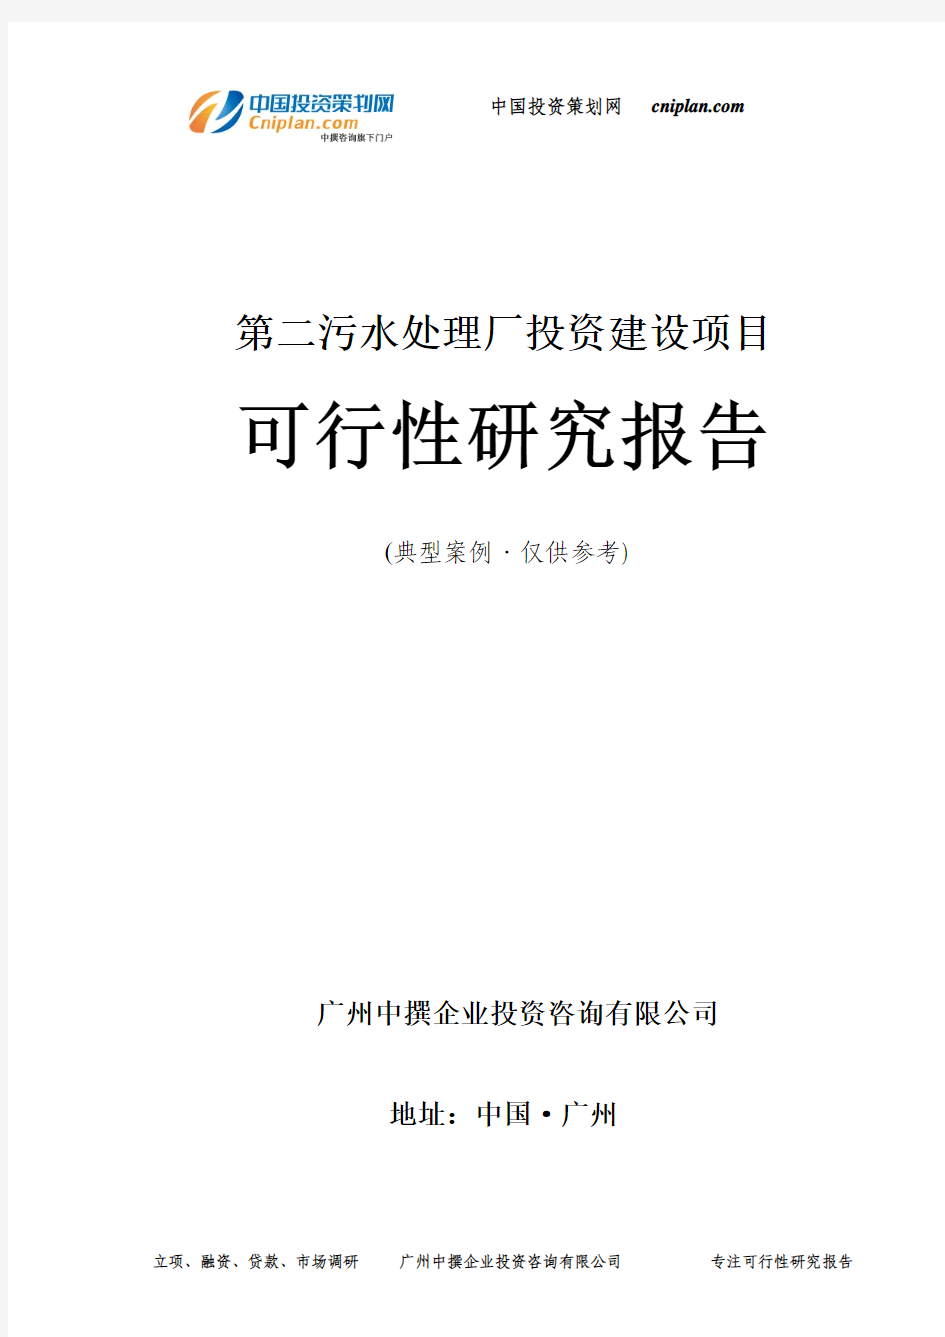 第二污水处理厂投资建设项目可行性研究报告-广州中撰咨询